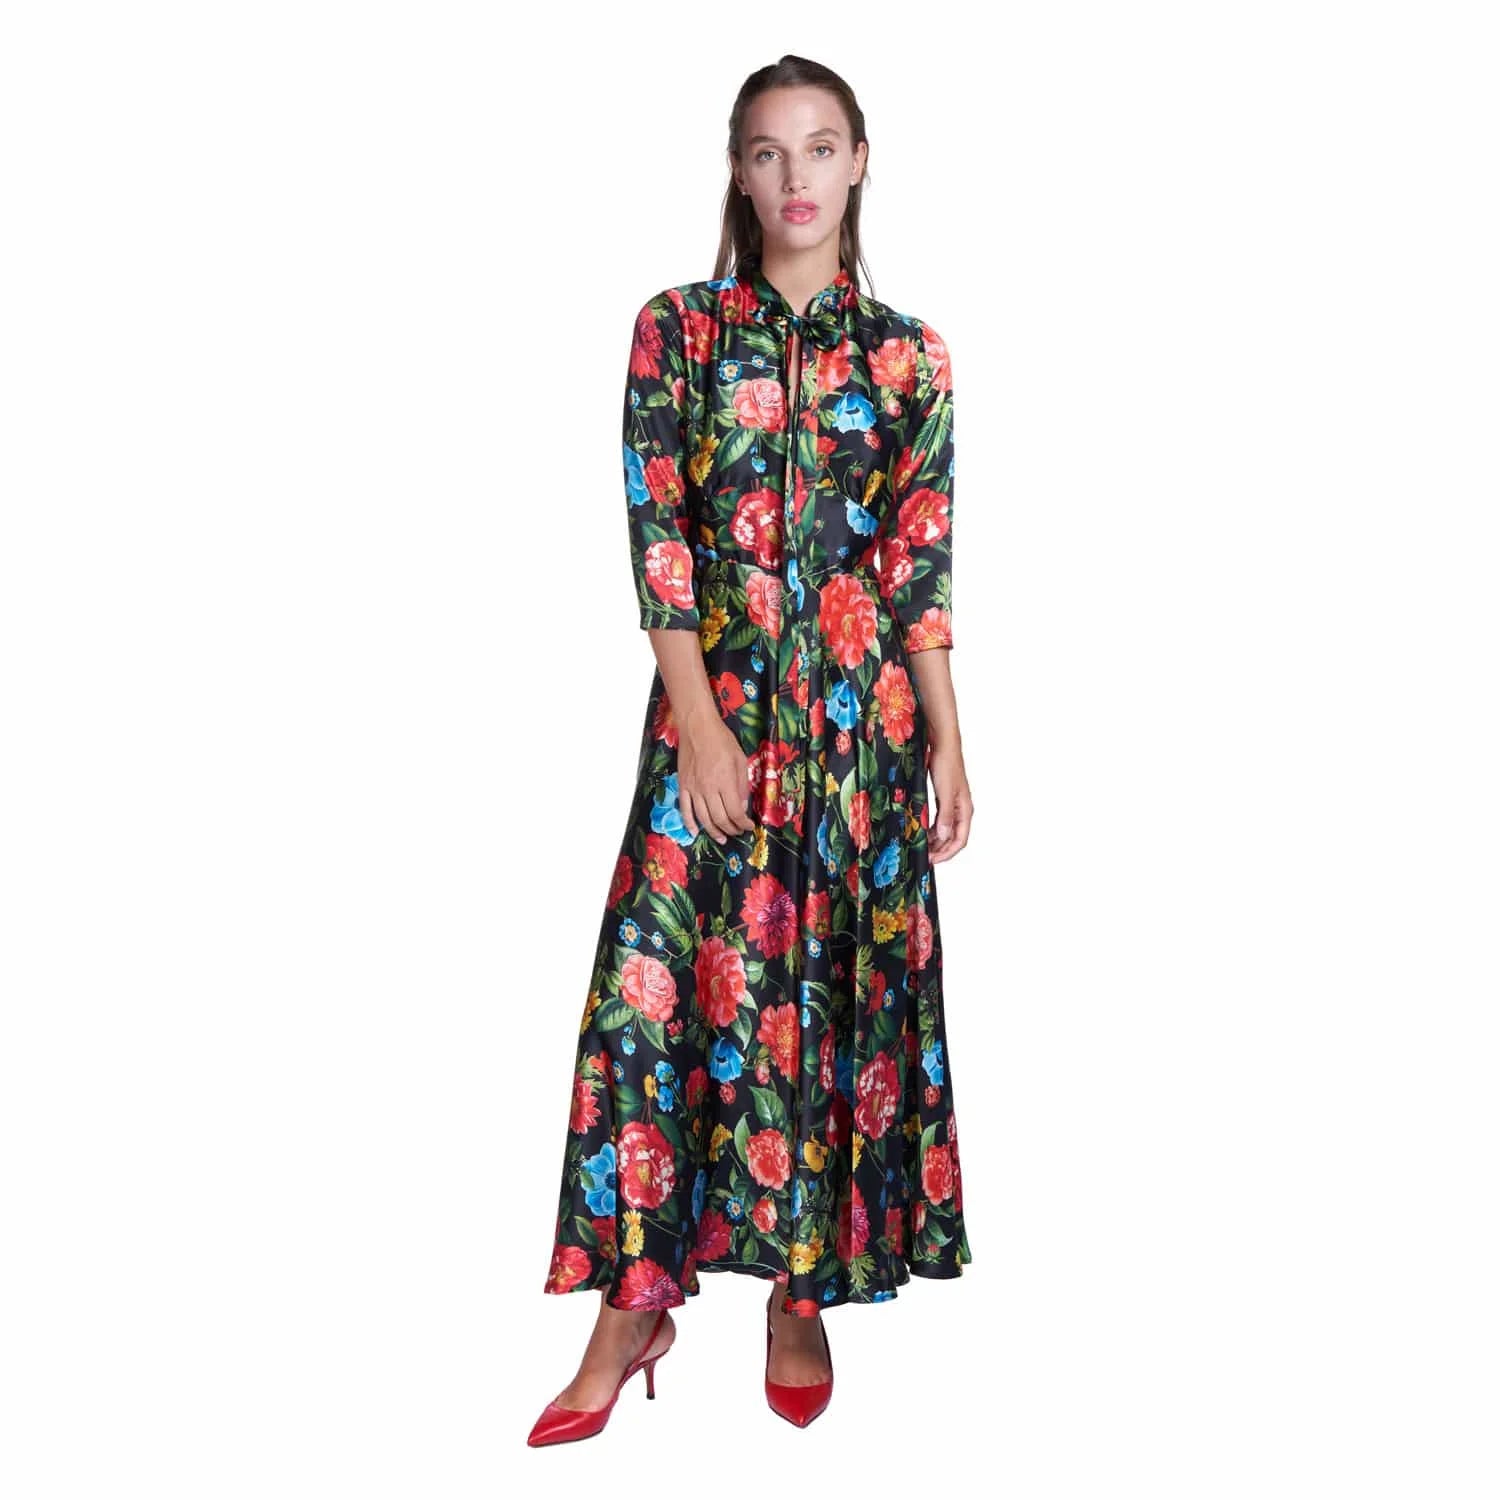 Multi floral silk dress - Dress